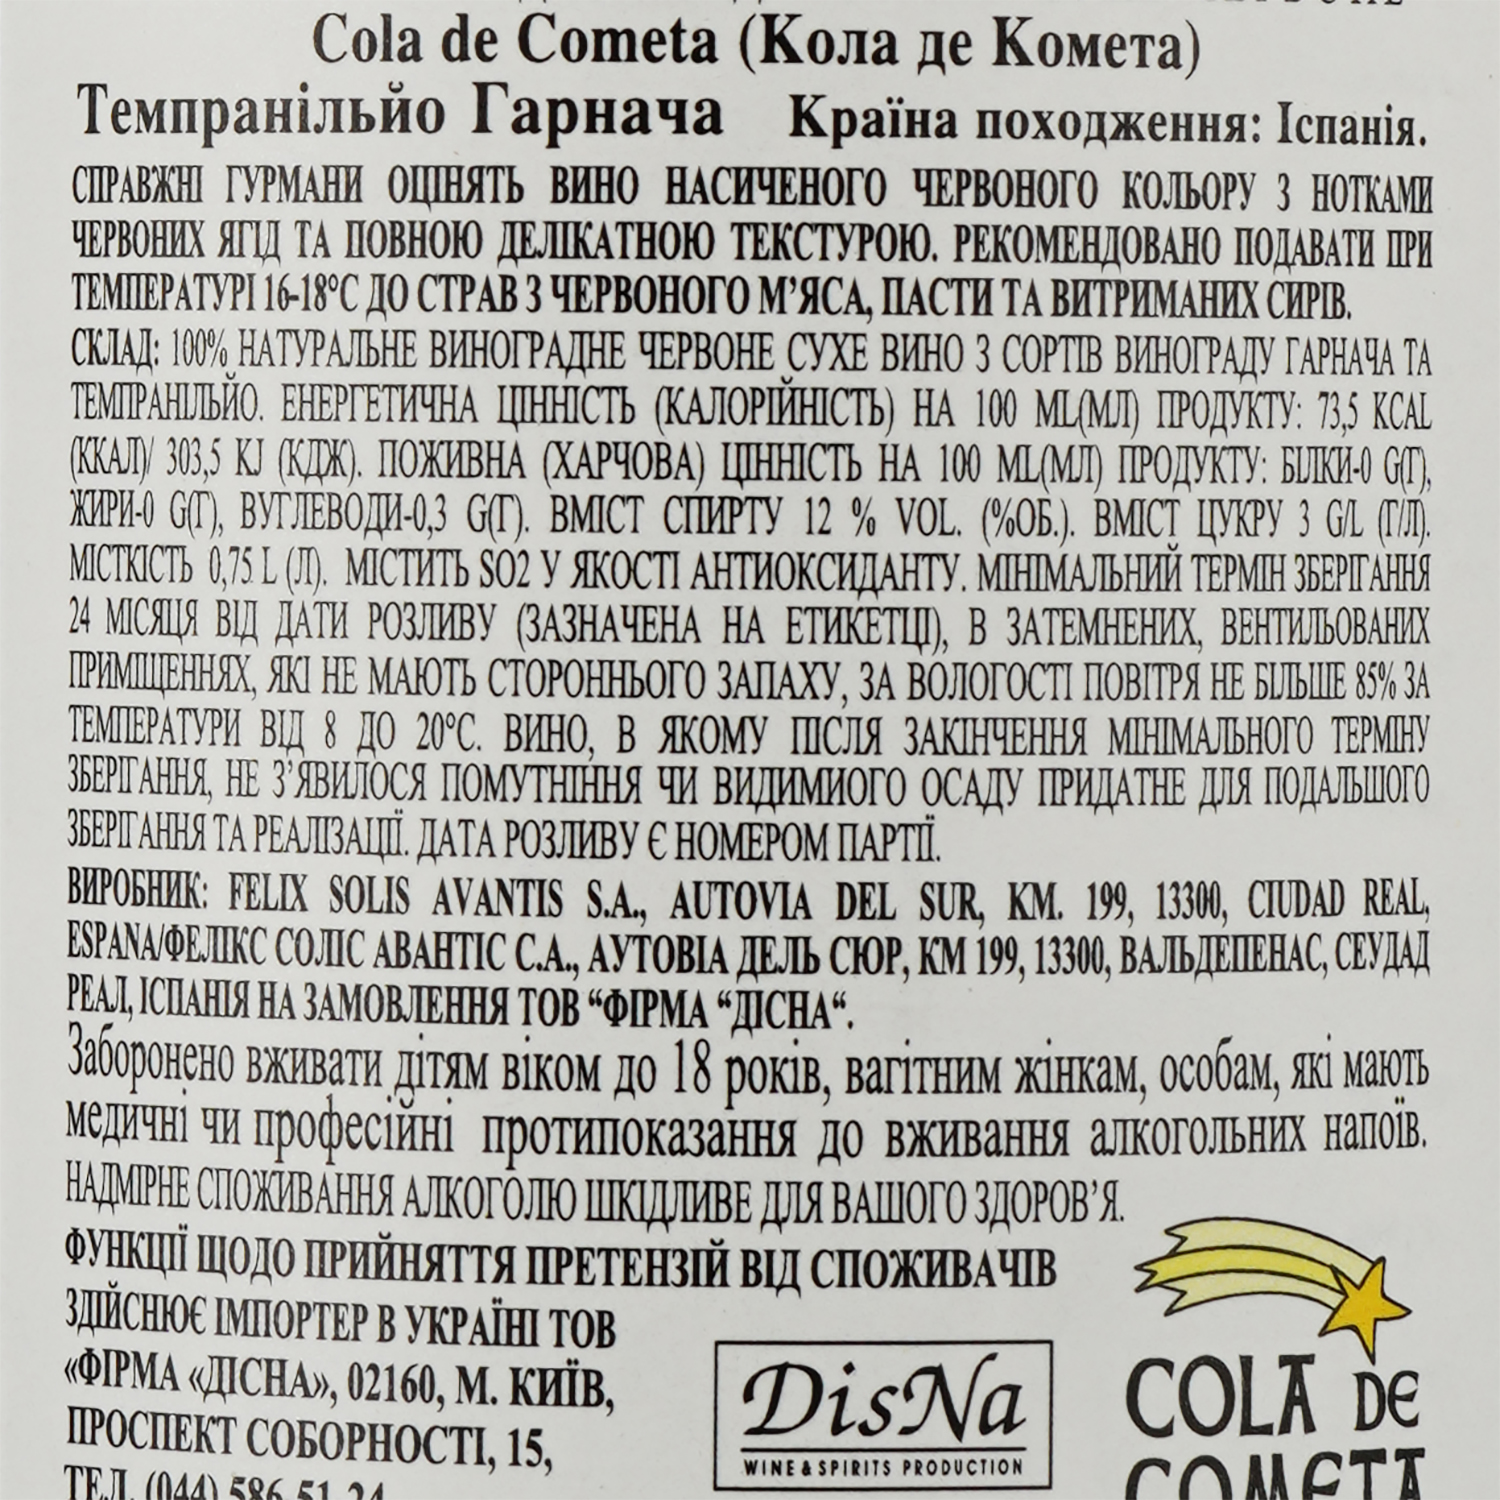 Вино Cola De Cometa Tempranillo Garnacha, красное, сухое, 12%, 0,75 л - фото 3